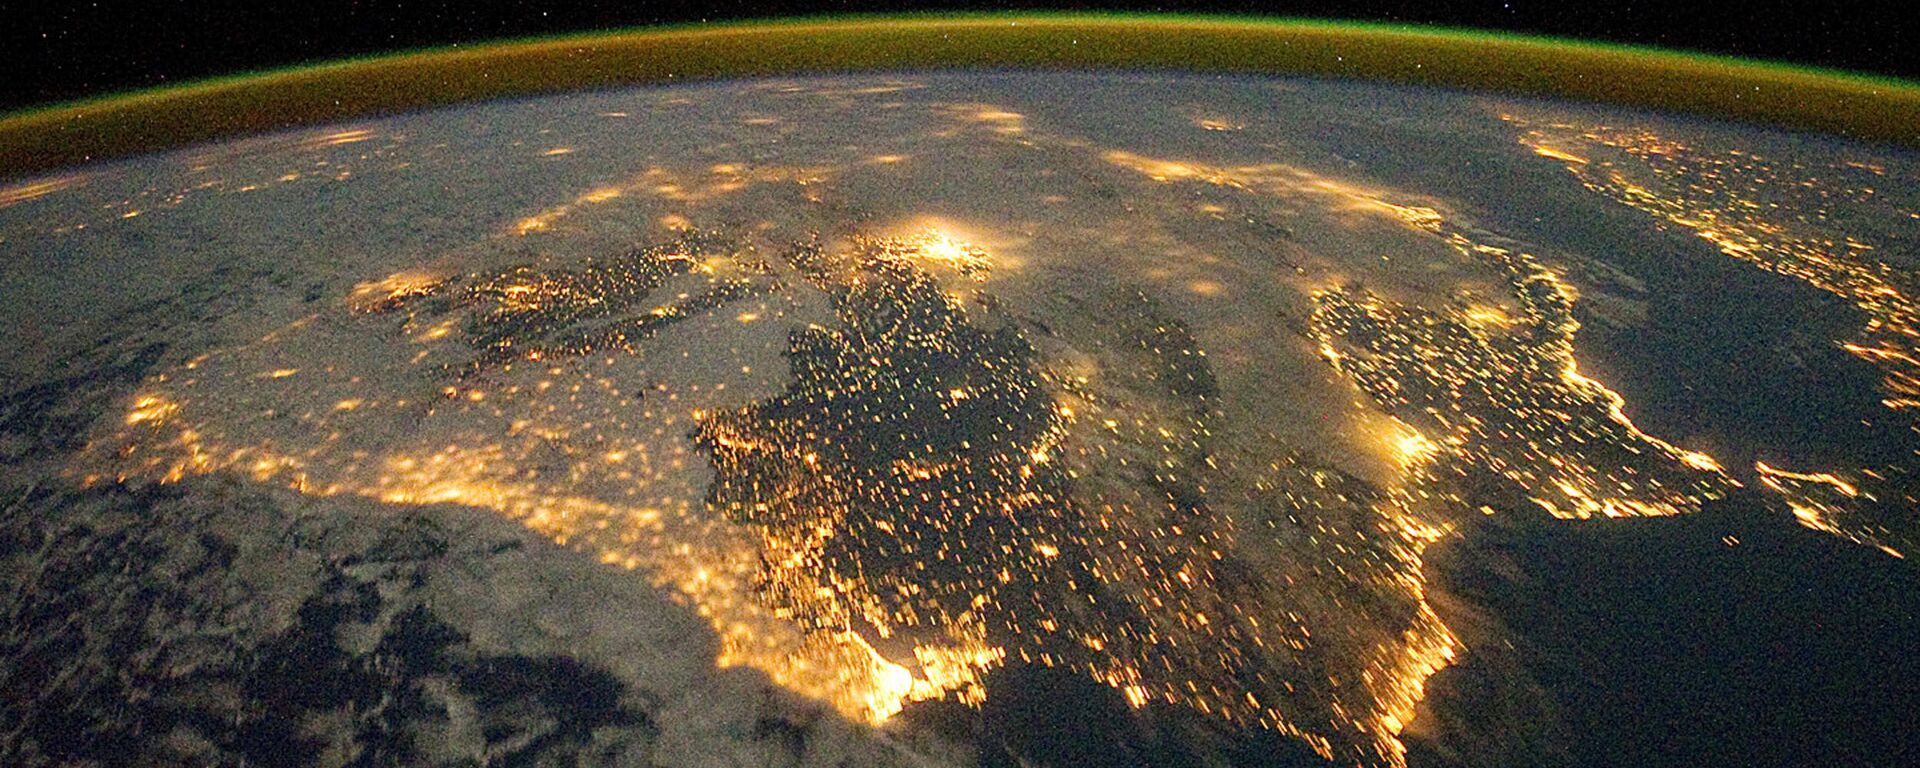 Фотография астронавта, опубликованная Земной обсерваторией НАСА 26 декабря 2011 года - Sputnik Абхазия, 1920, 23.07.2022